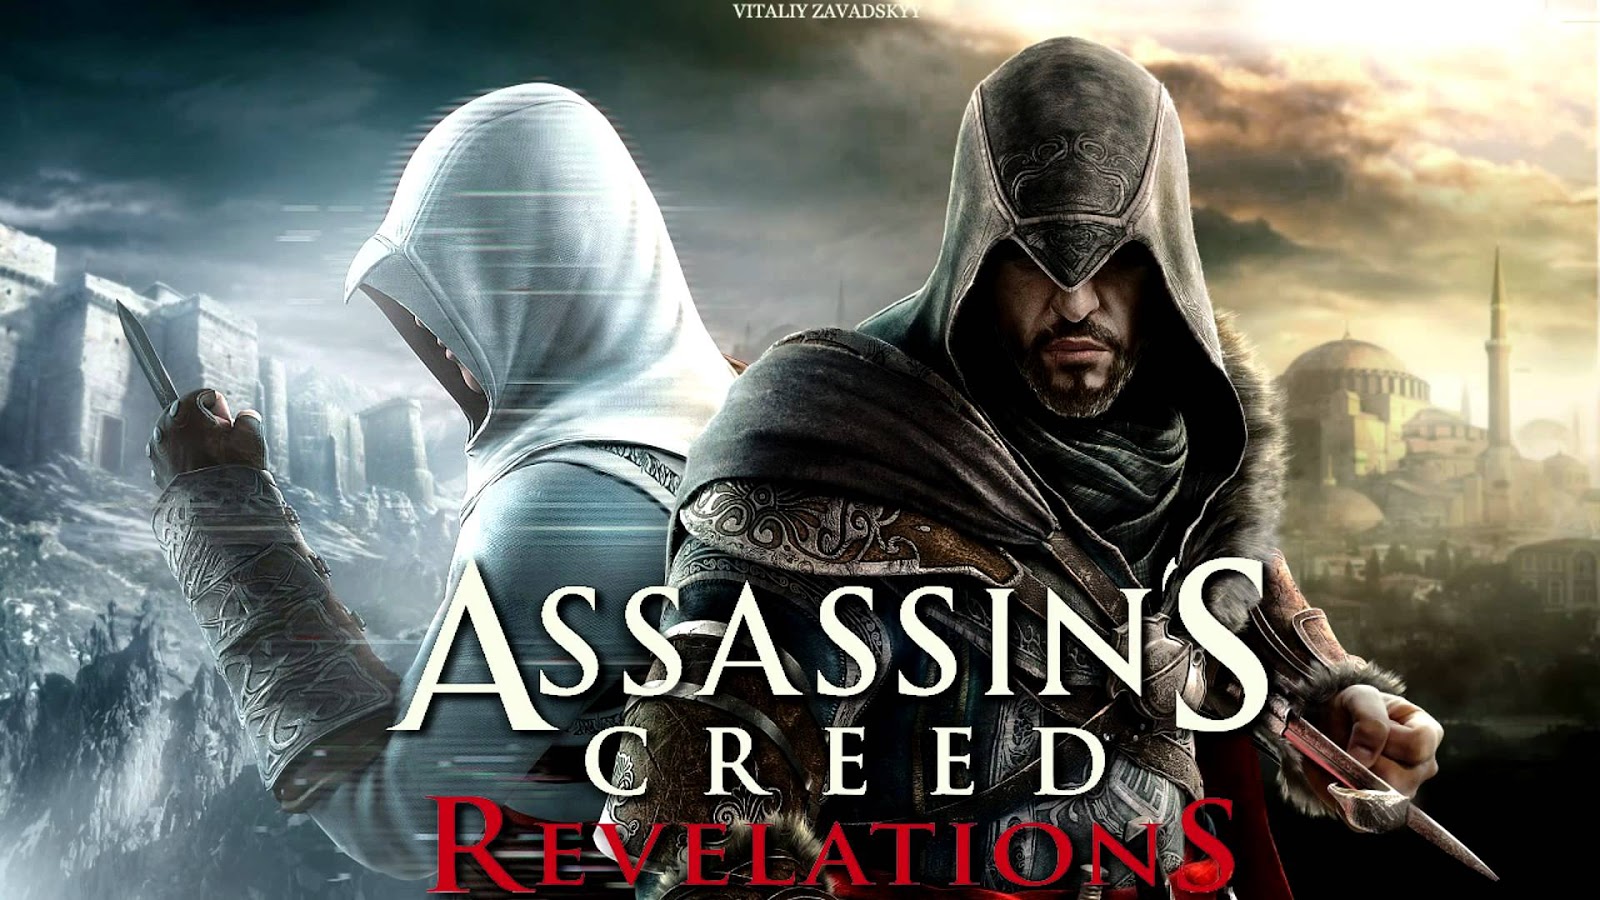 Ису ассасин. Assassin's Creed: Revelations. Revelations мастер ассасин. Альтаир ибн ла-Ахад. 05_02 Мастер ассасин.